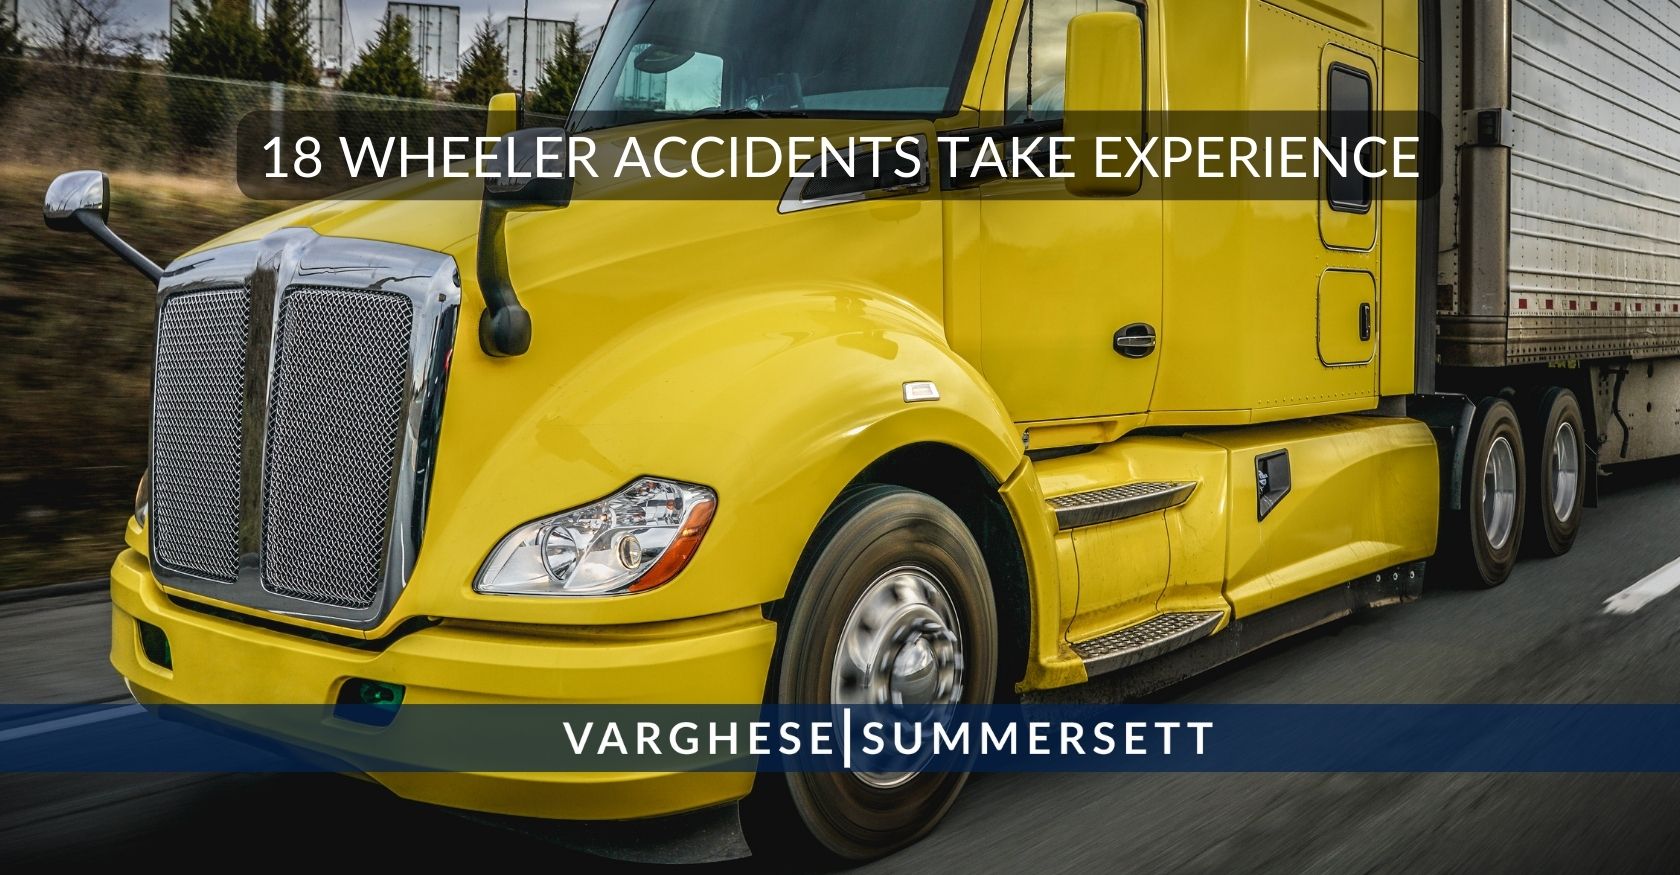 Los accidentes con camiones de 18 ruedas requieren experiencia